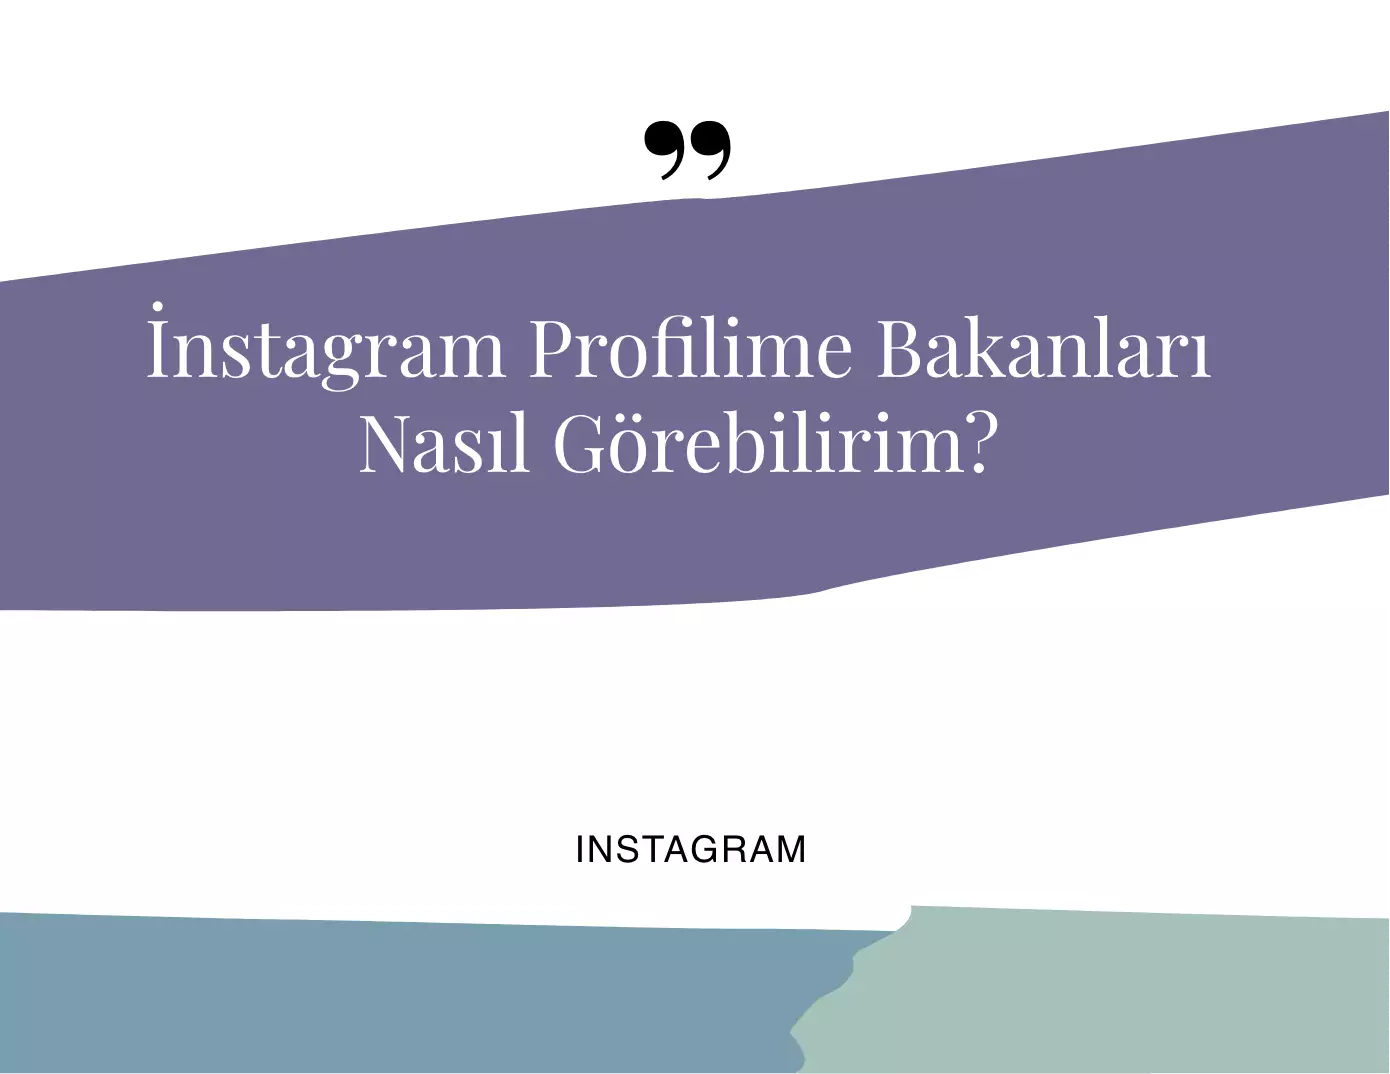 Instagram Profilime Bakanları Nasıl Görebilirim?